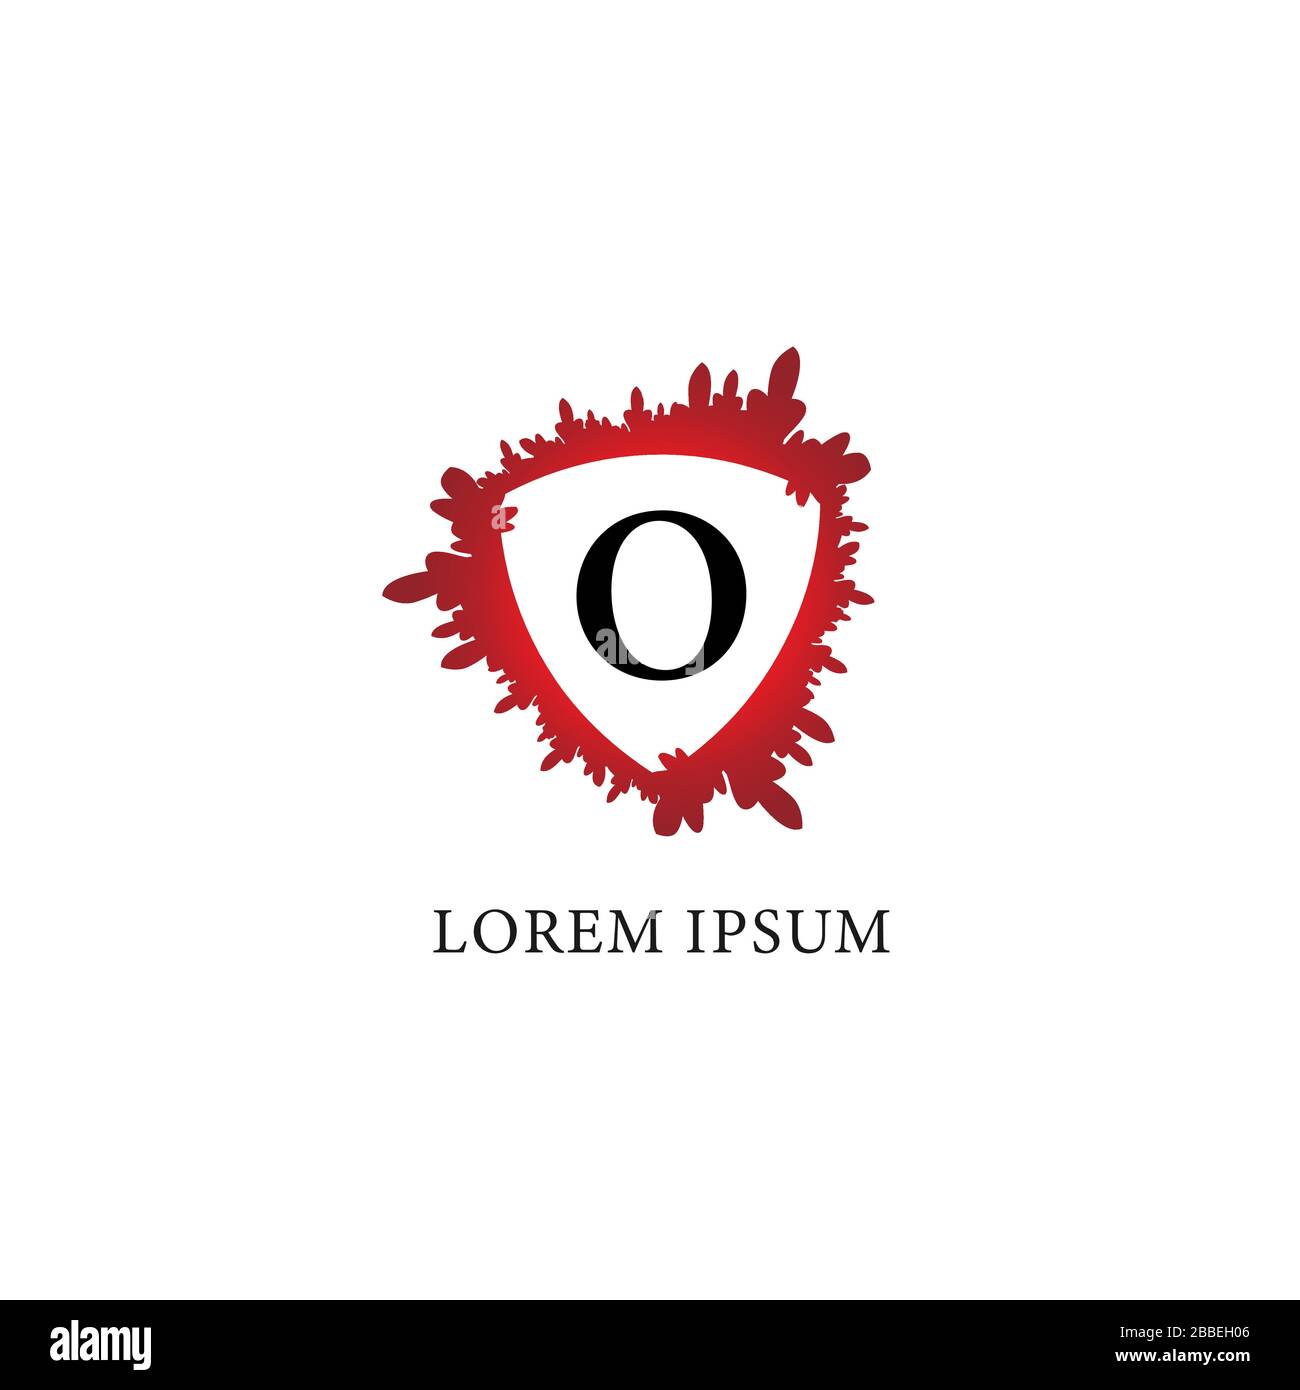 Designvorlage für das Logo des Buchstaben-O-Alphabets. Blutspritzer mit Schildform in der Mitte. Erstes abjad Logo Konzept isoliert auf weißem Hintergrund. Stock Vektor